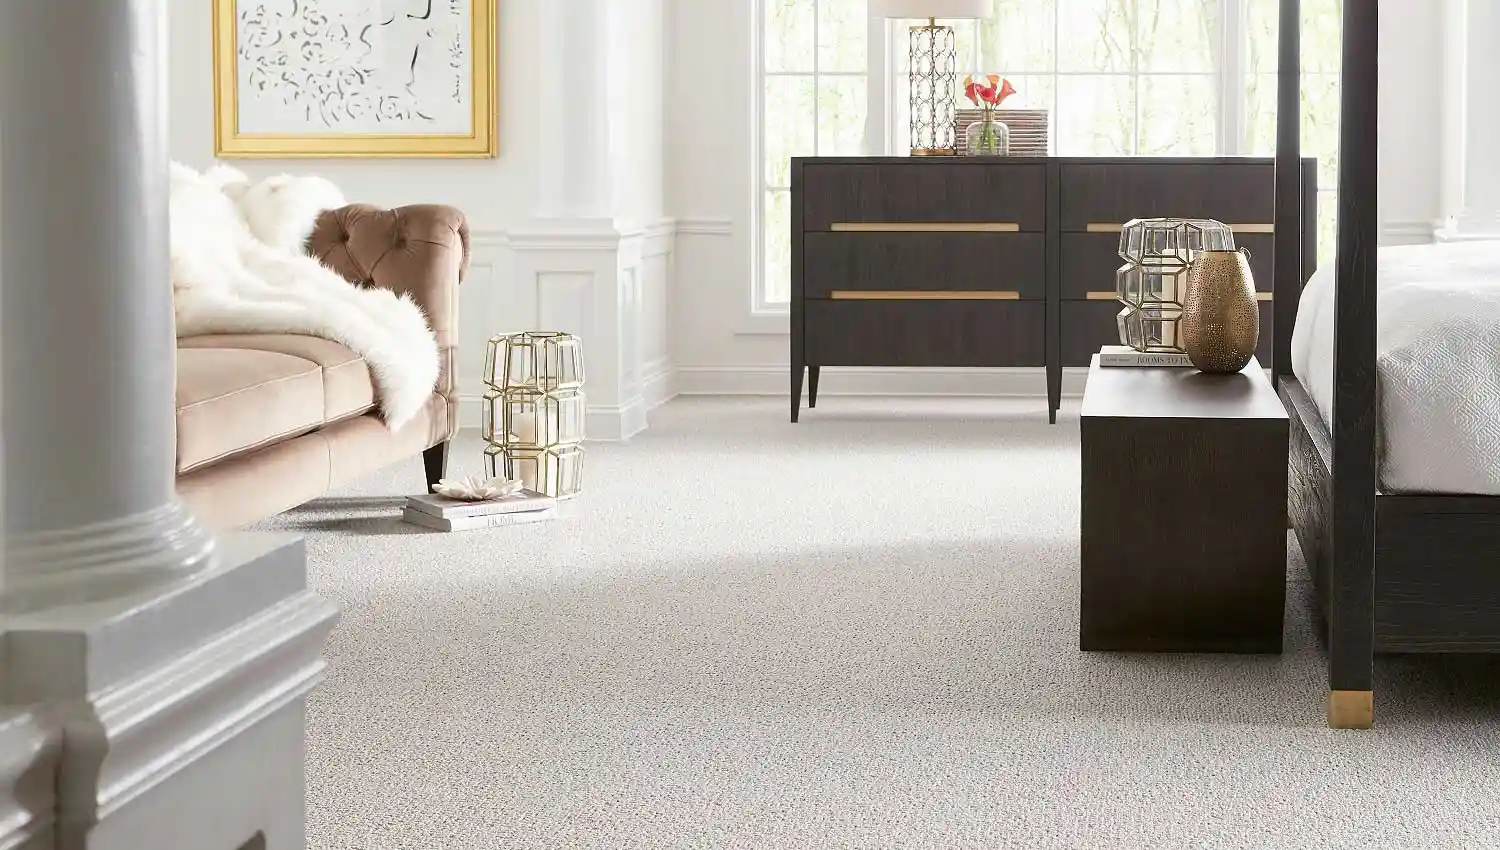 karastan-white-carpet-luxurious-room-scene